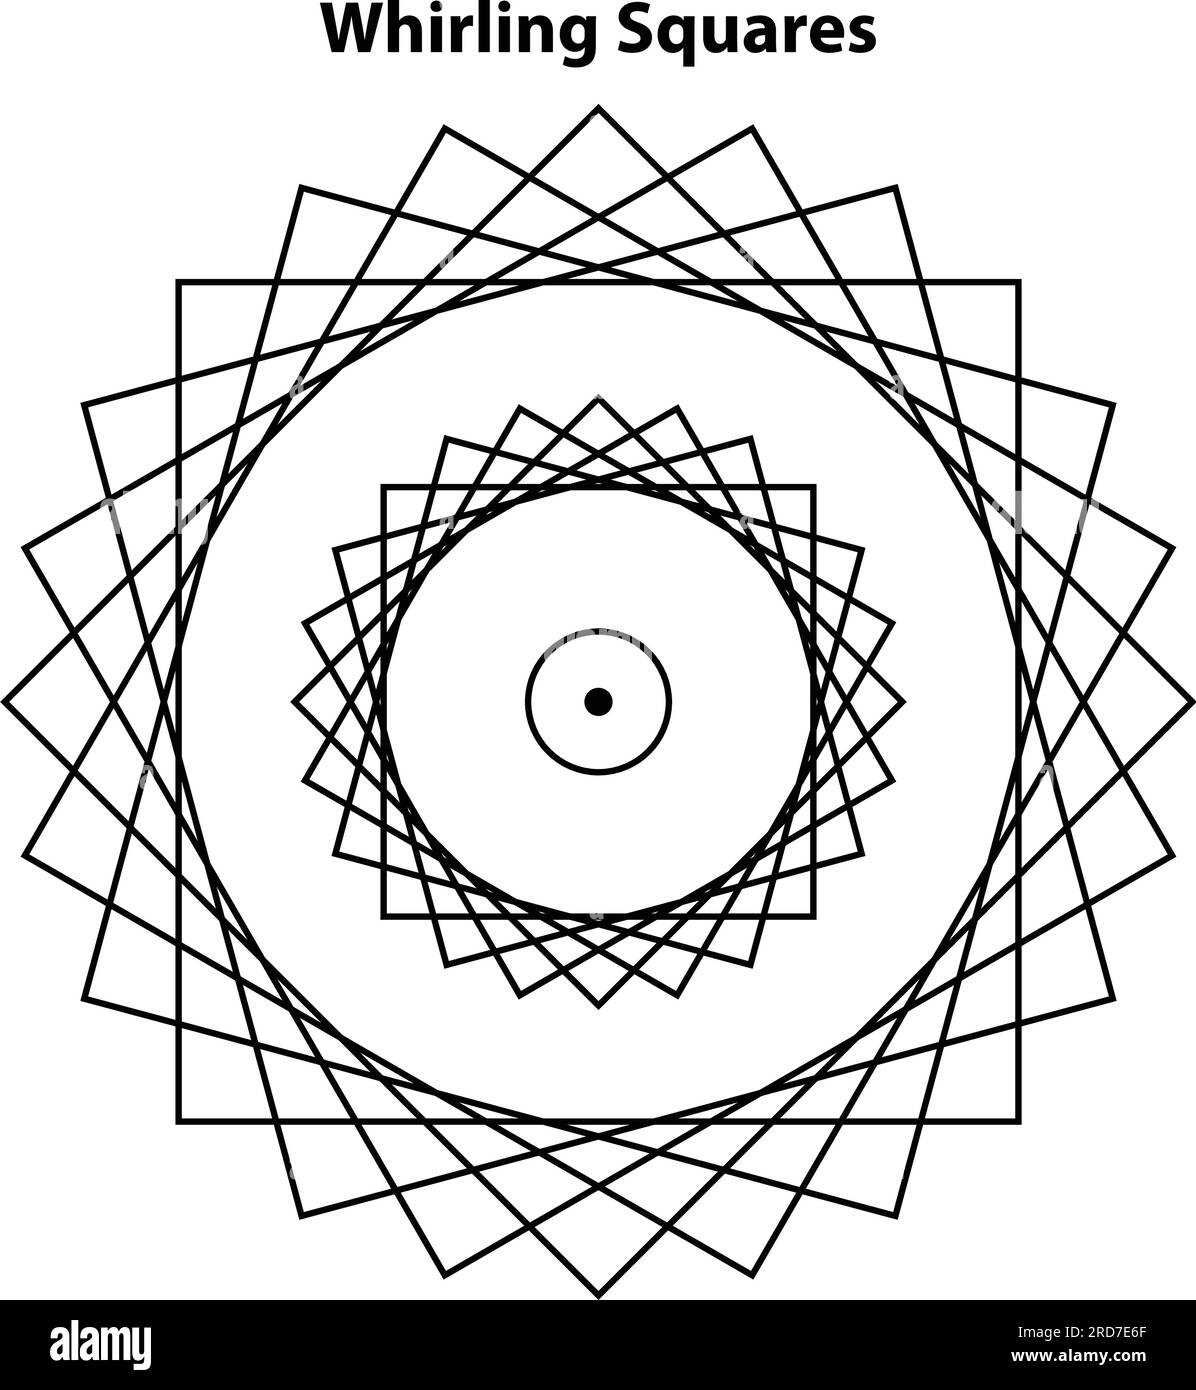 Wirbelnde Quadrate. Vektorelemente Für Die Konstruktion Heiliger Geometrien. Diese Religion, Philosophie und Spiritualsymbole. Die Welt der Geometrie. Stock Vektor